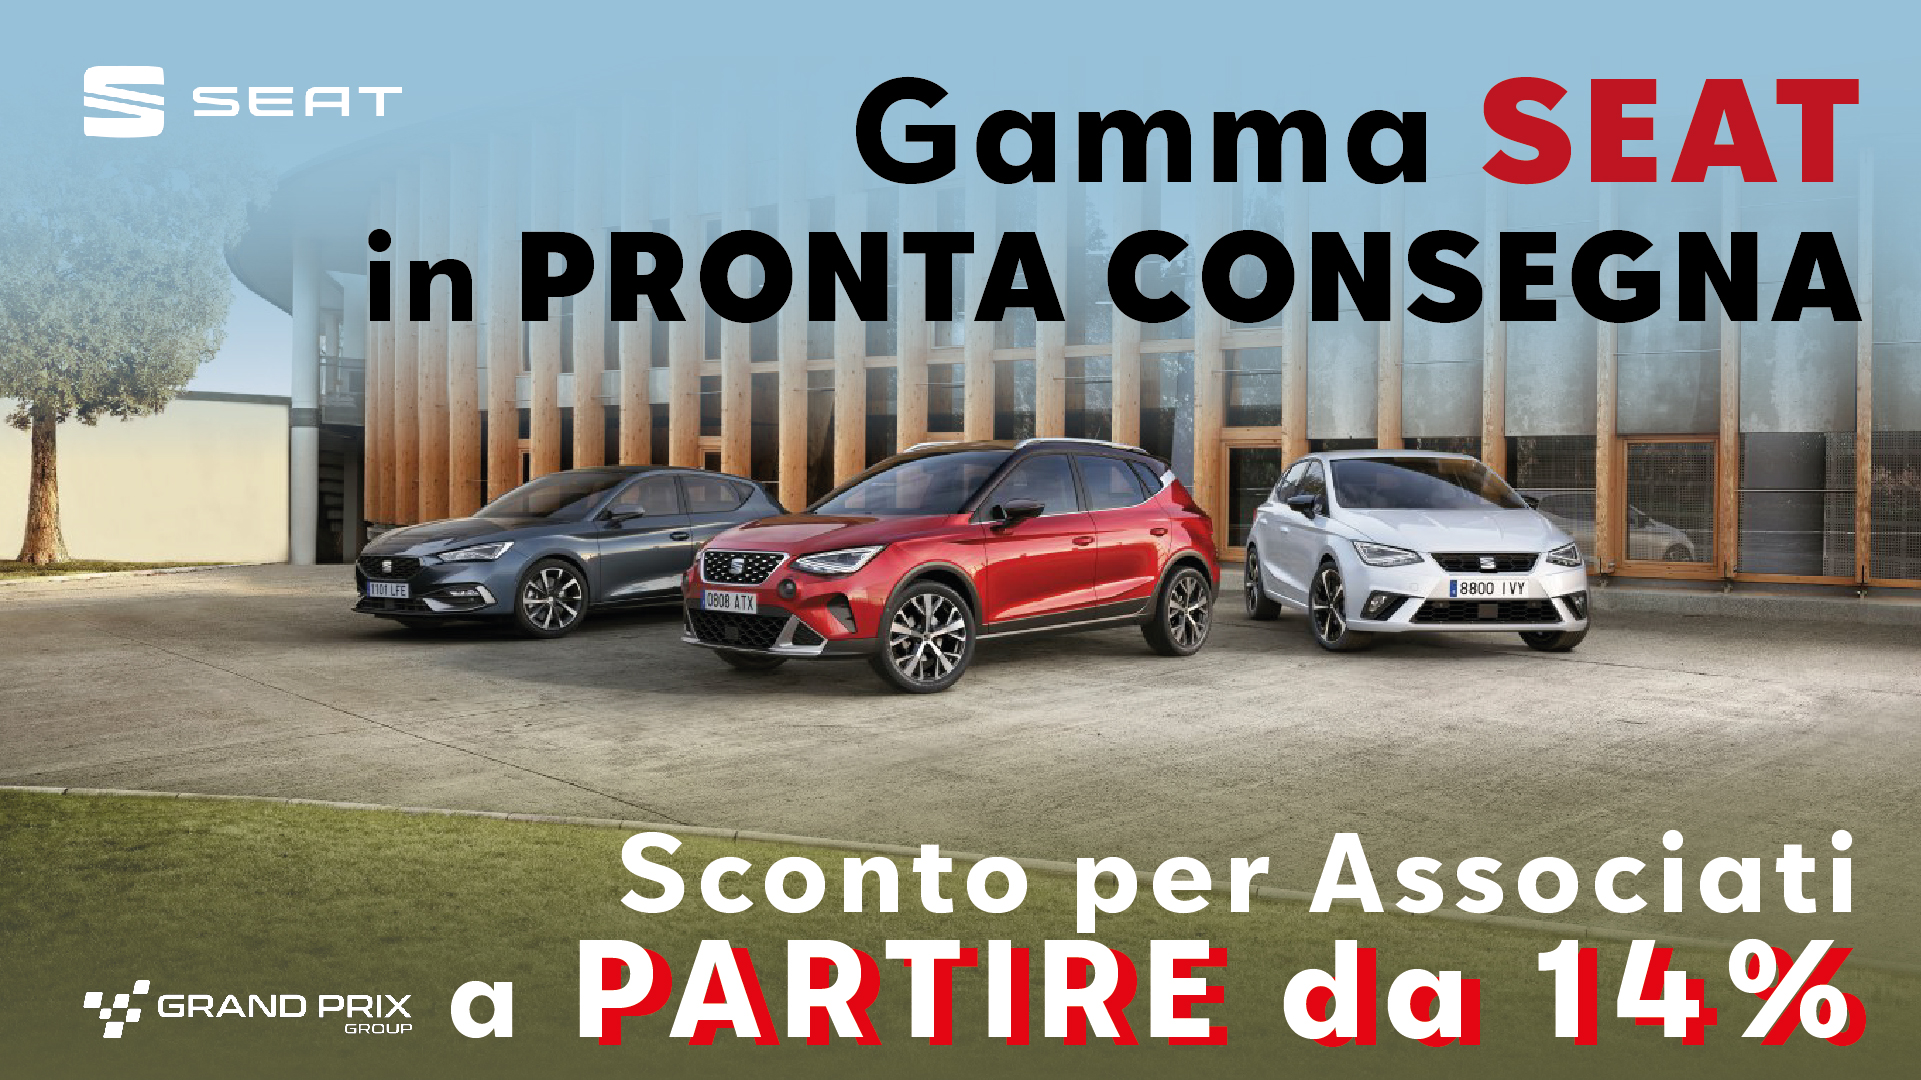 Grand Prix Group - gamma Seat in pronta Consegna